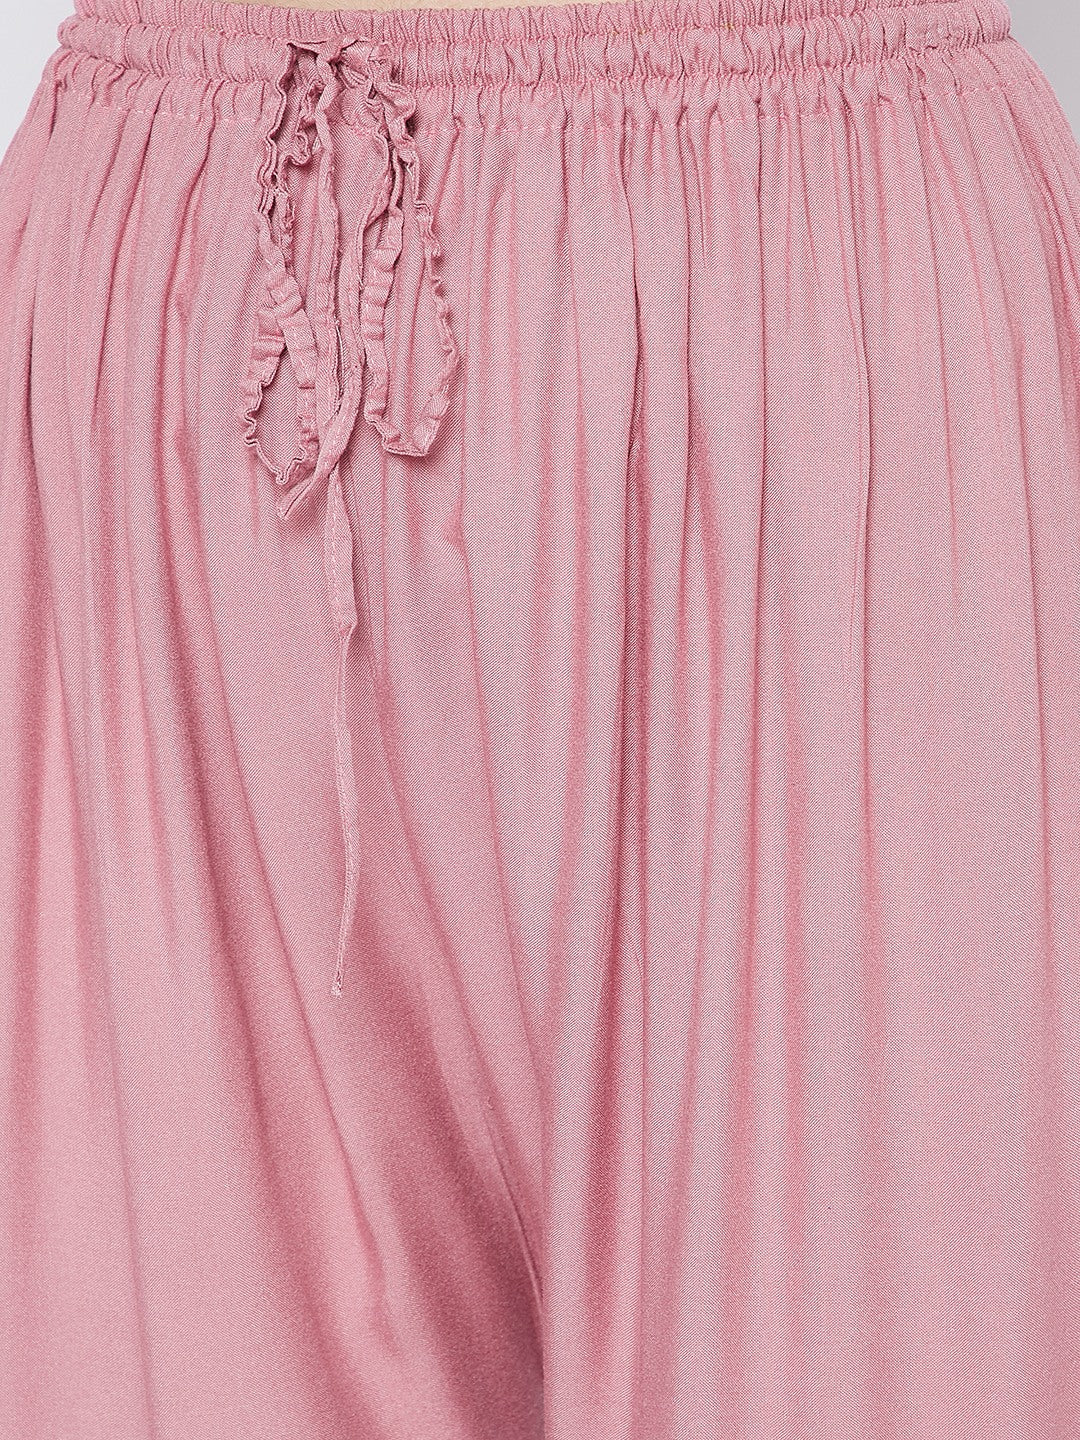 Wahe-NOOR Women's Light Pink Solid Rayon Palazzo - Distacart